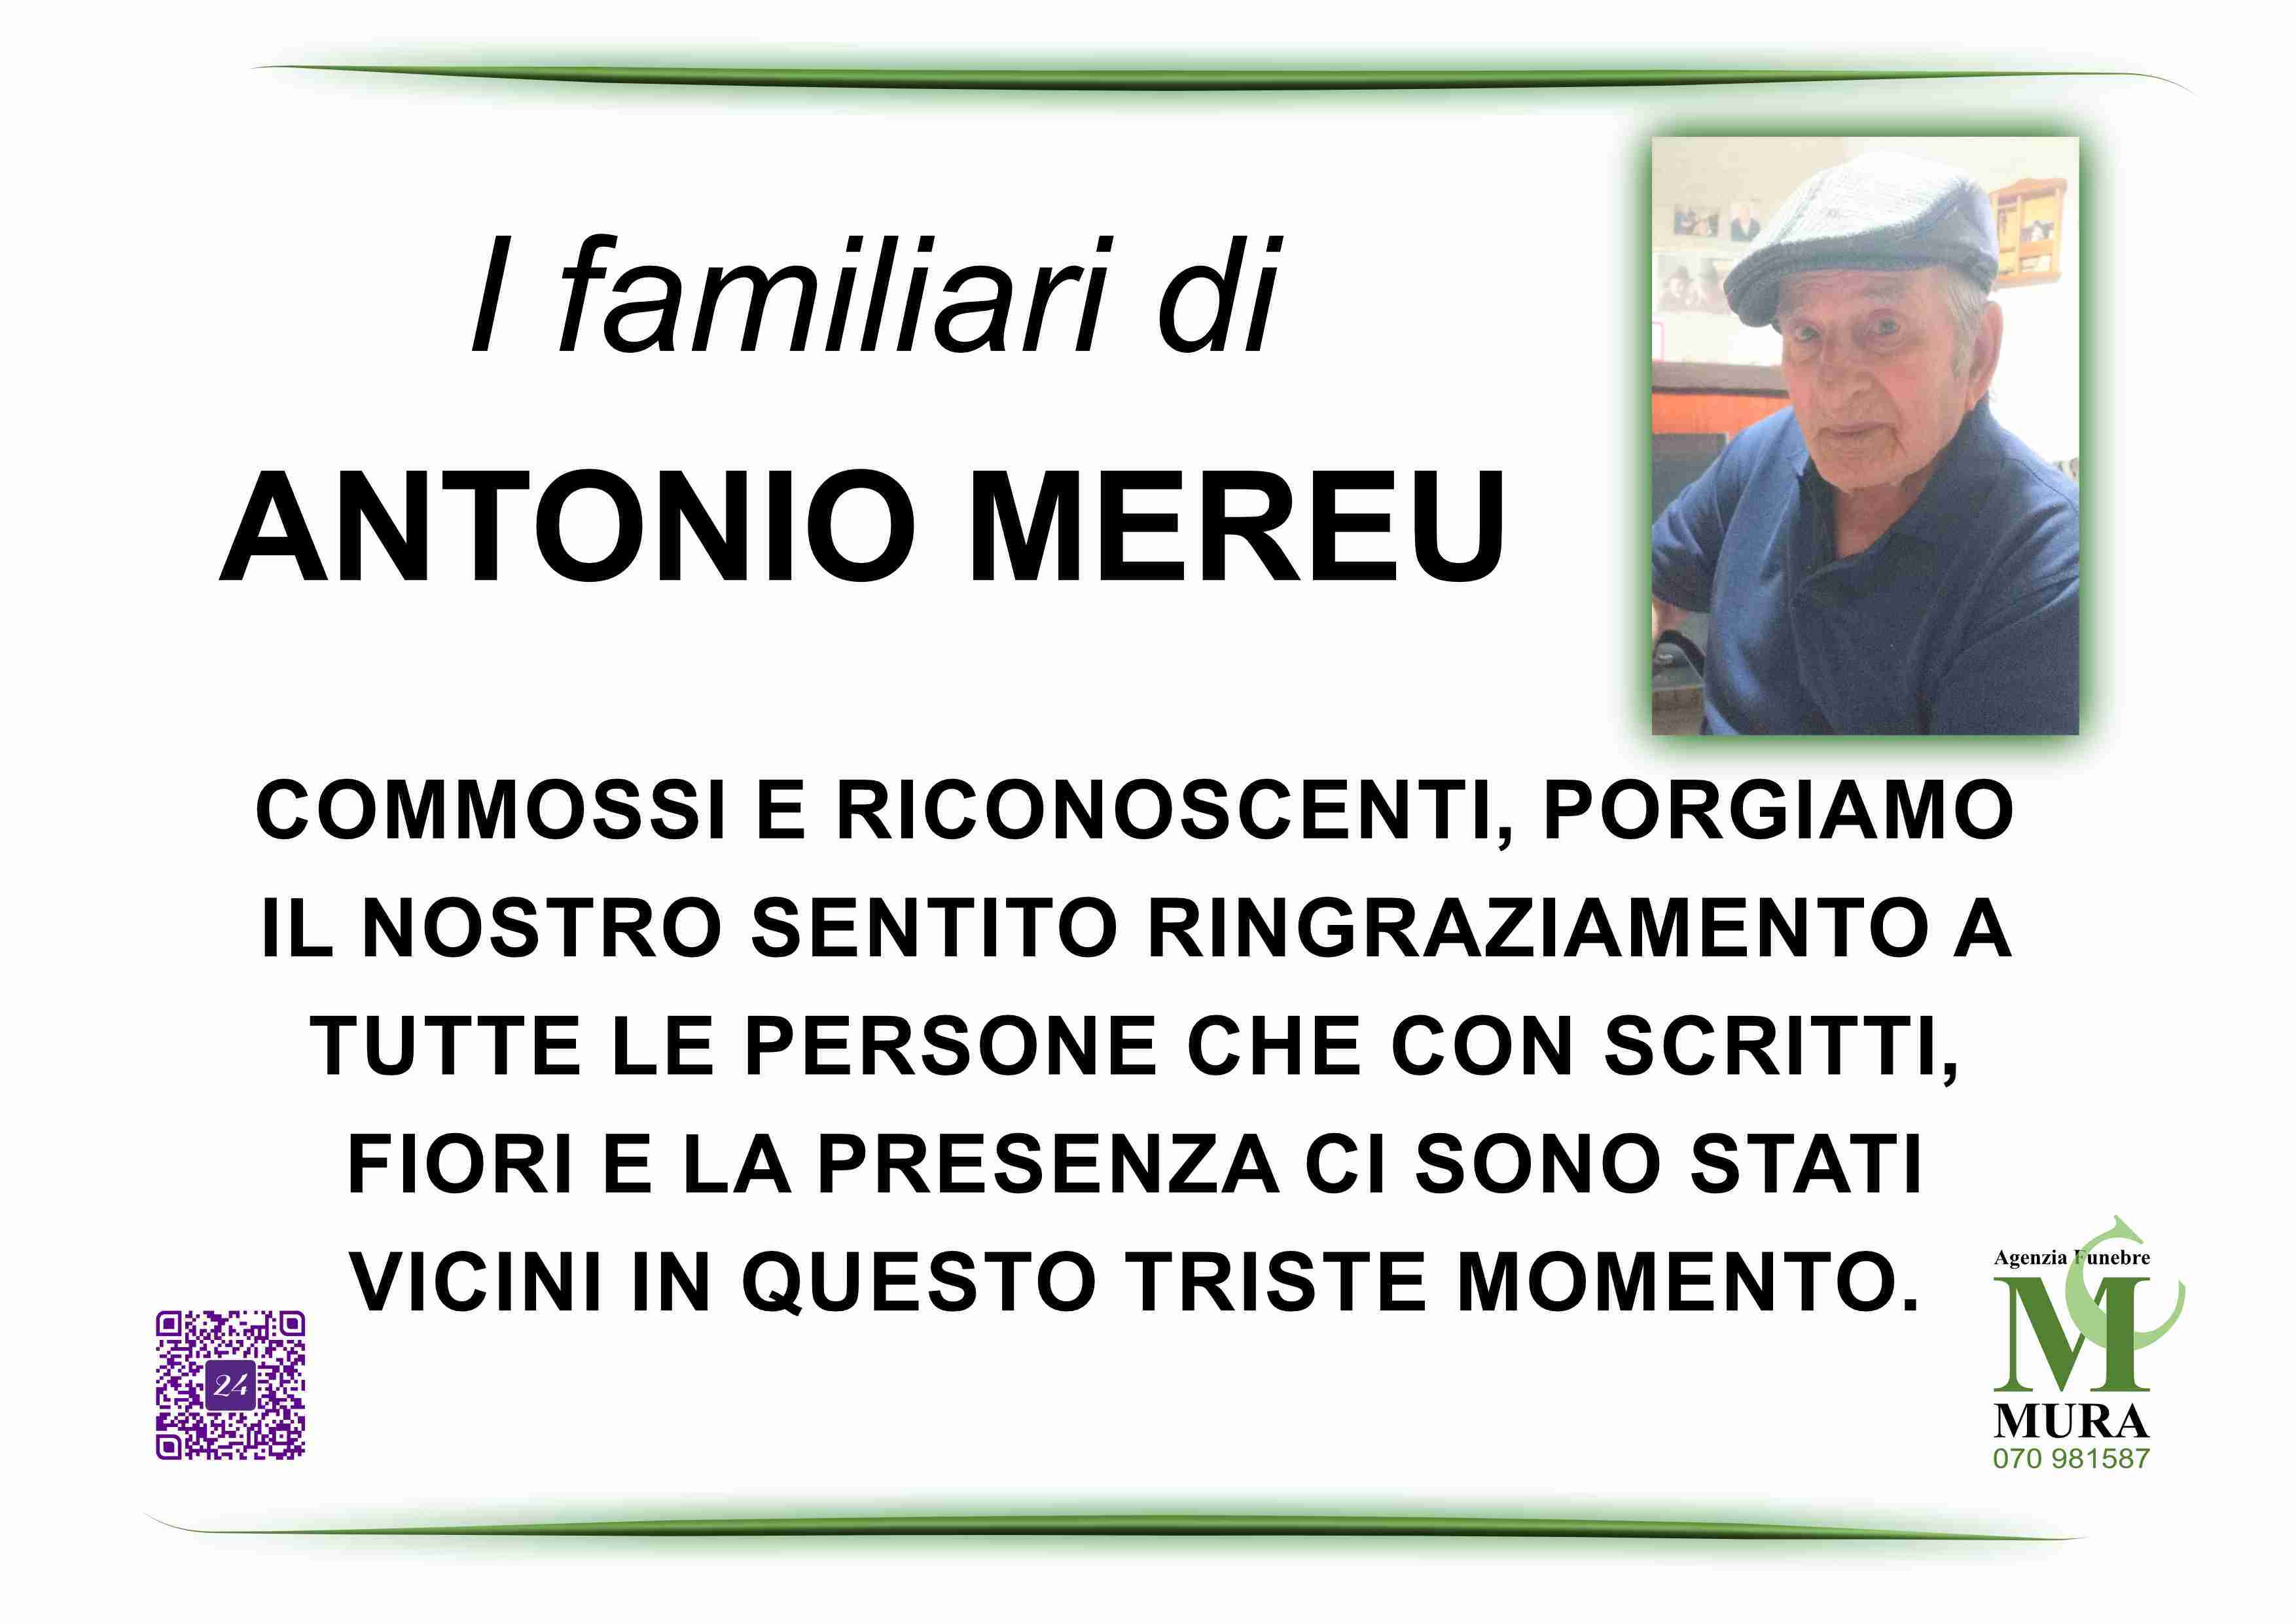 Antonio Mereu